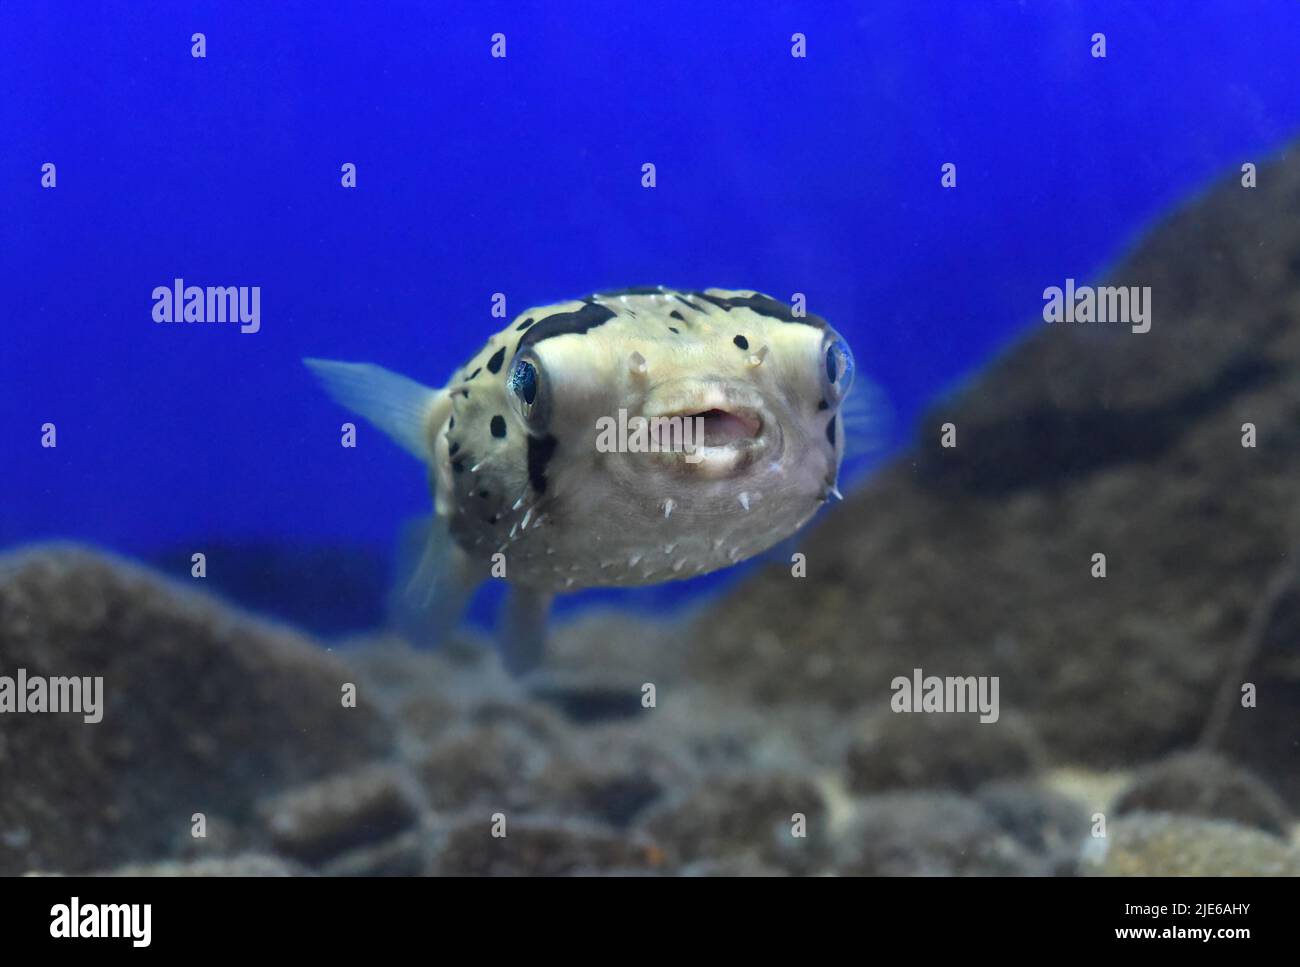 Puffer fish in aquarium close-up Stock Photo